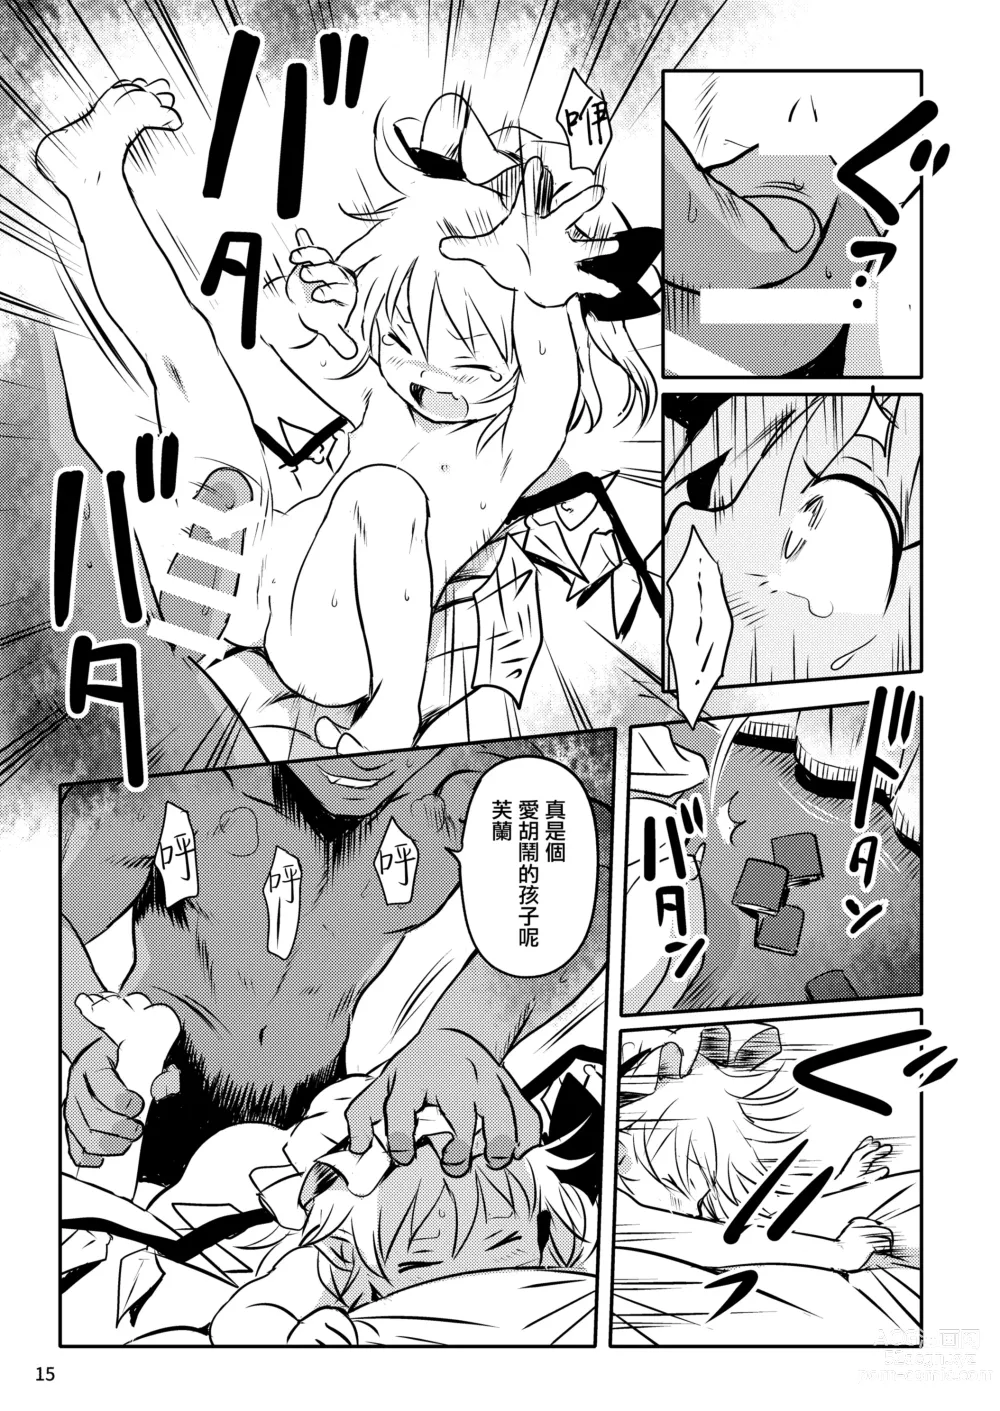 Page 15 of doujinshi 是好孩子吧!芙蘭醬!